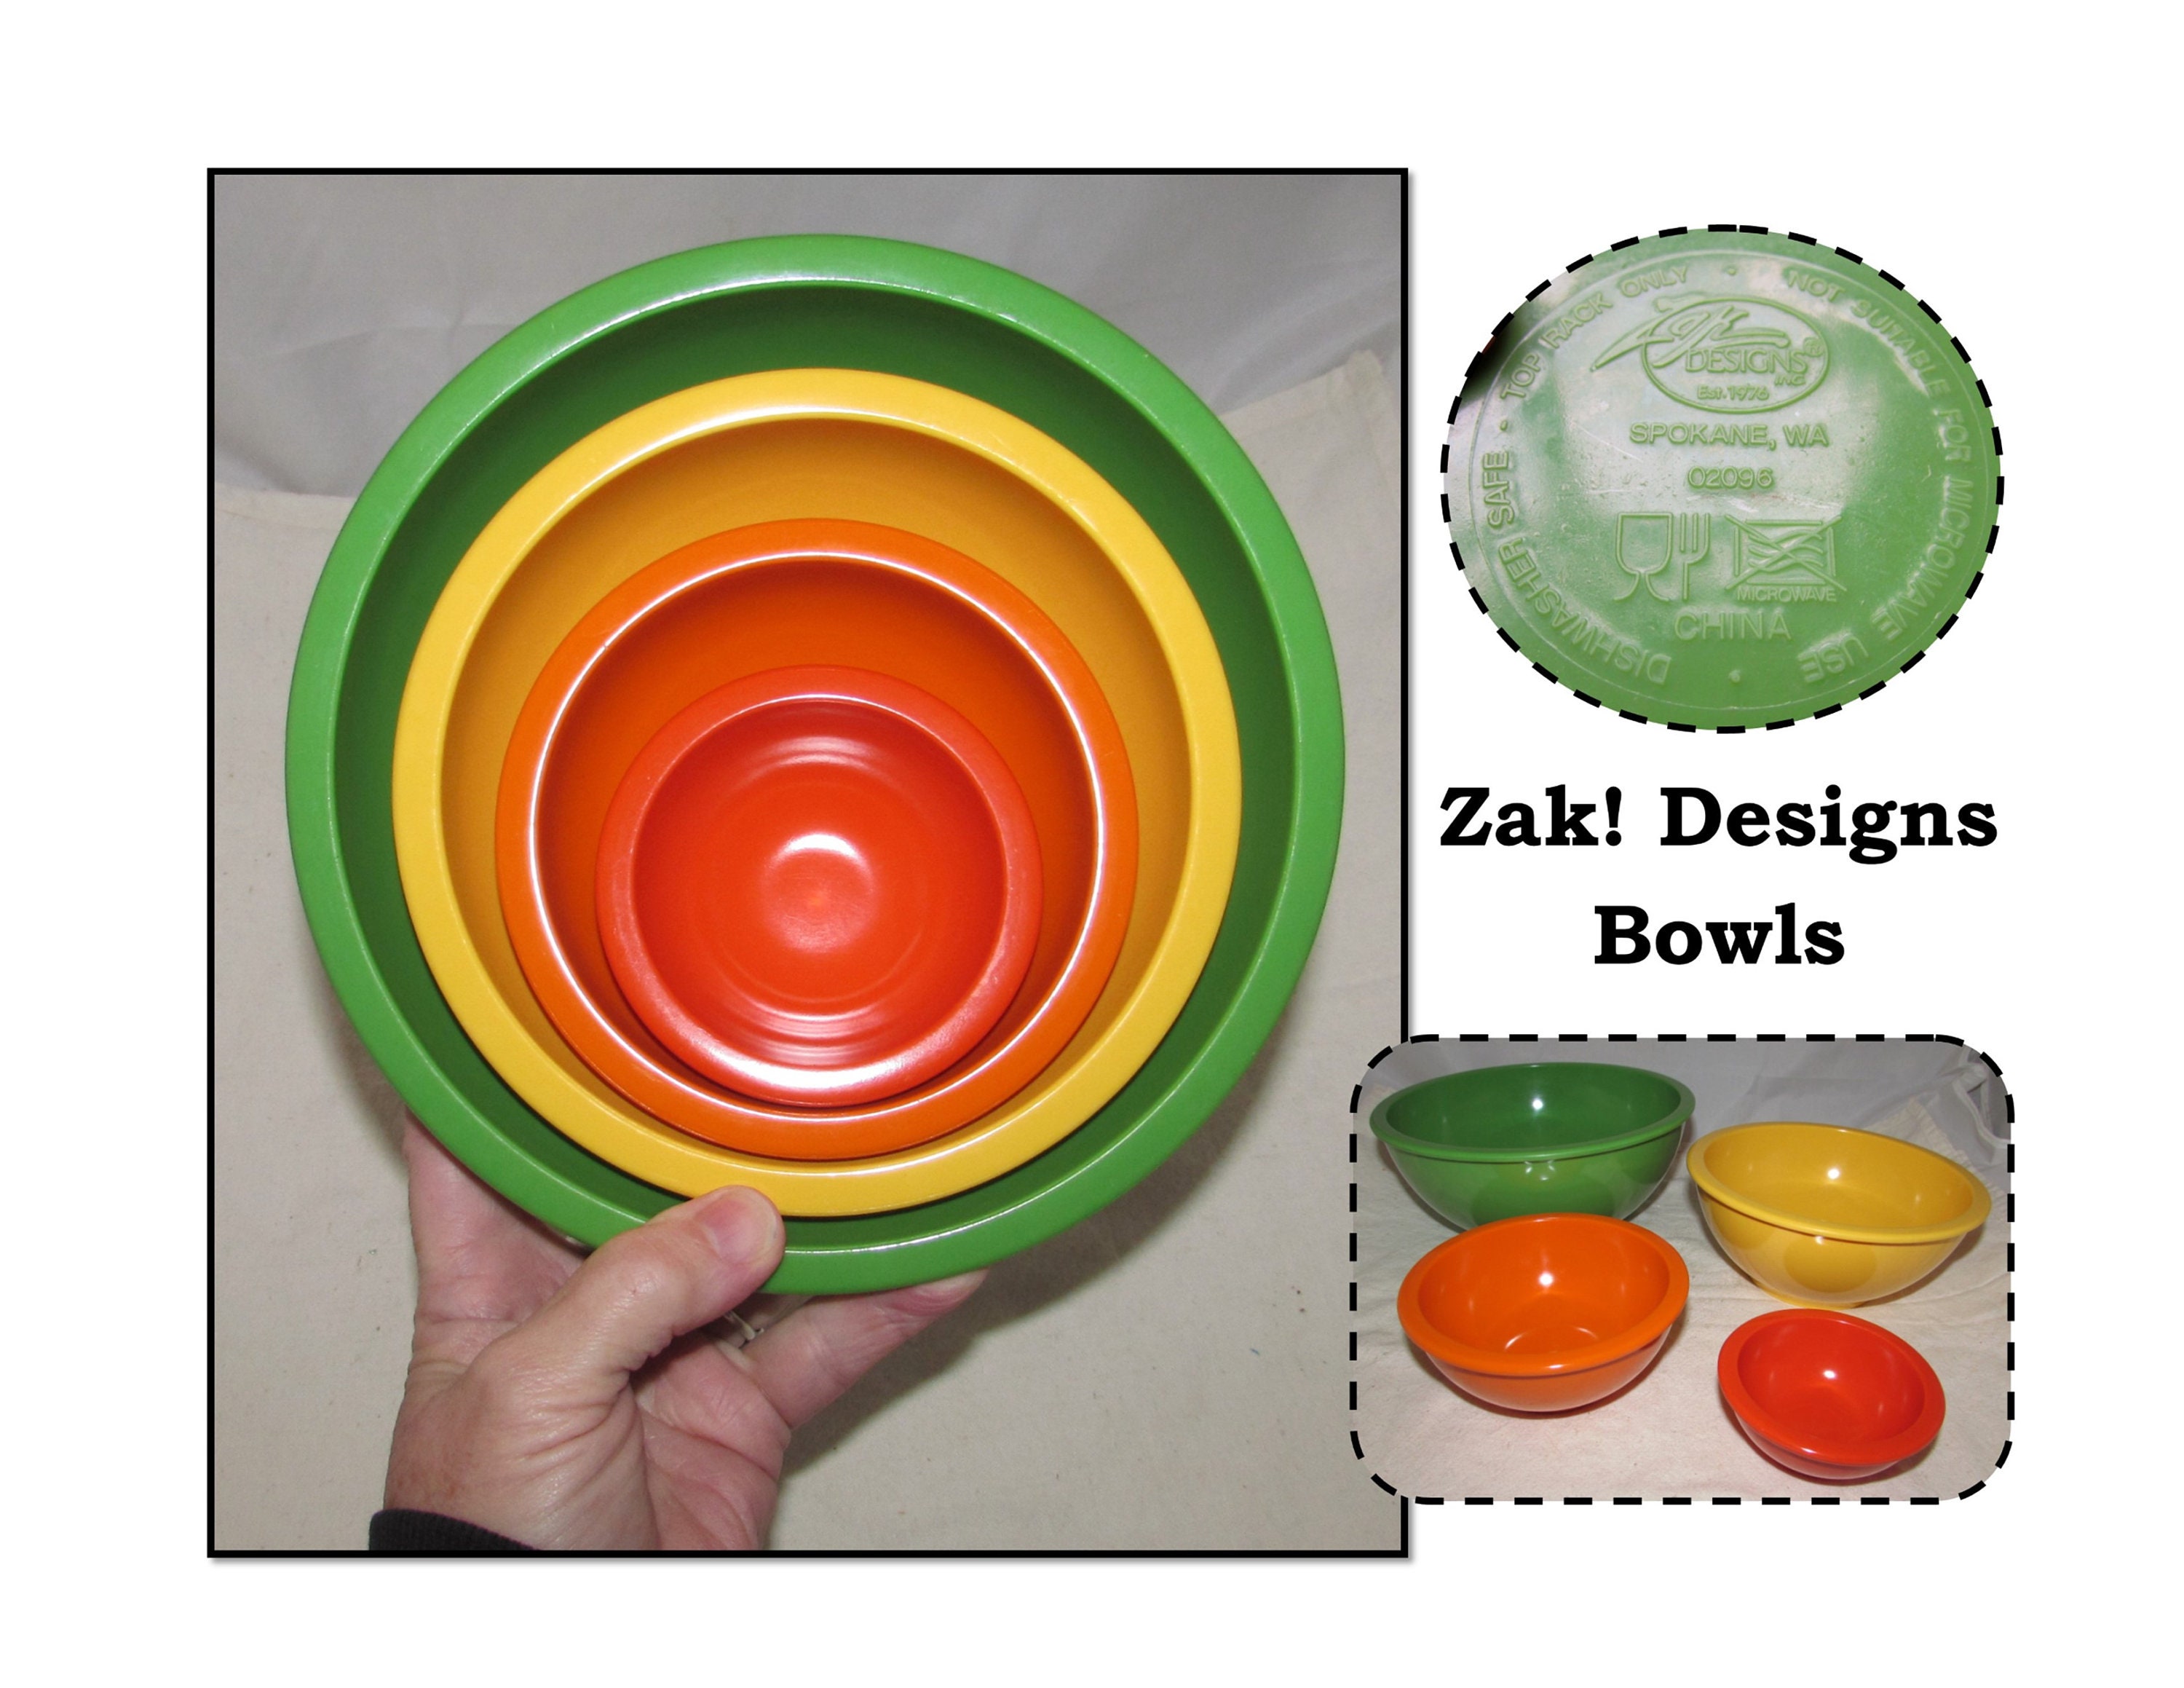 Enchanté Cook with Color Mixing Bowls 4 Piece Nesting Plastic